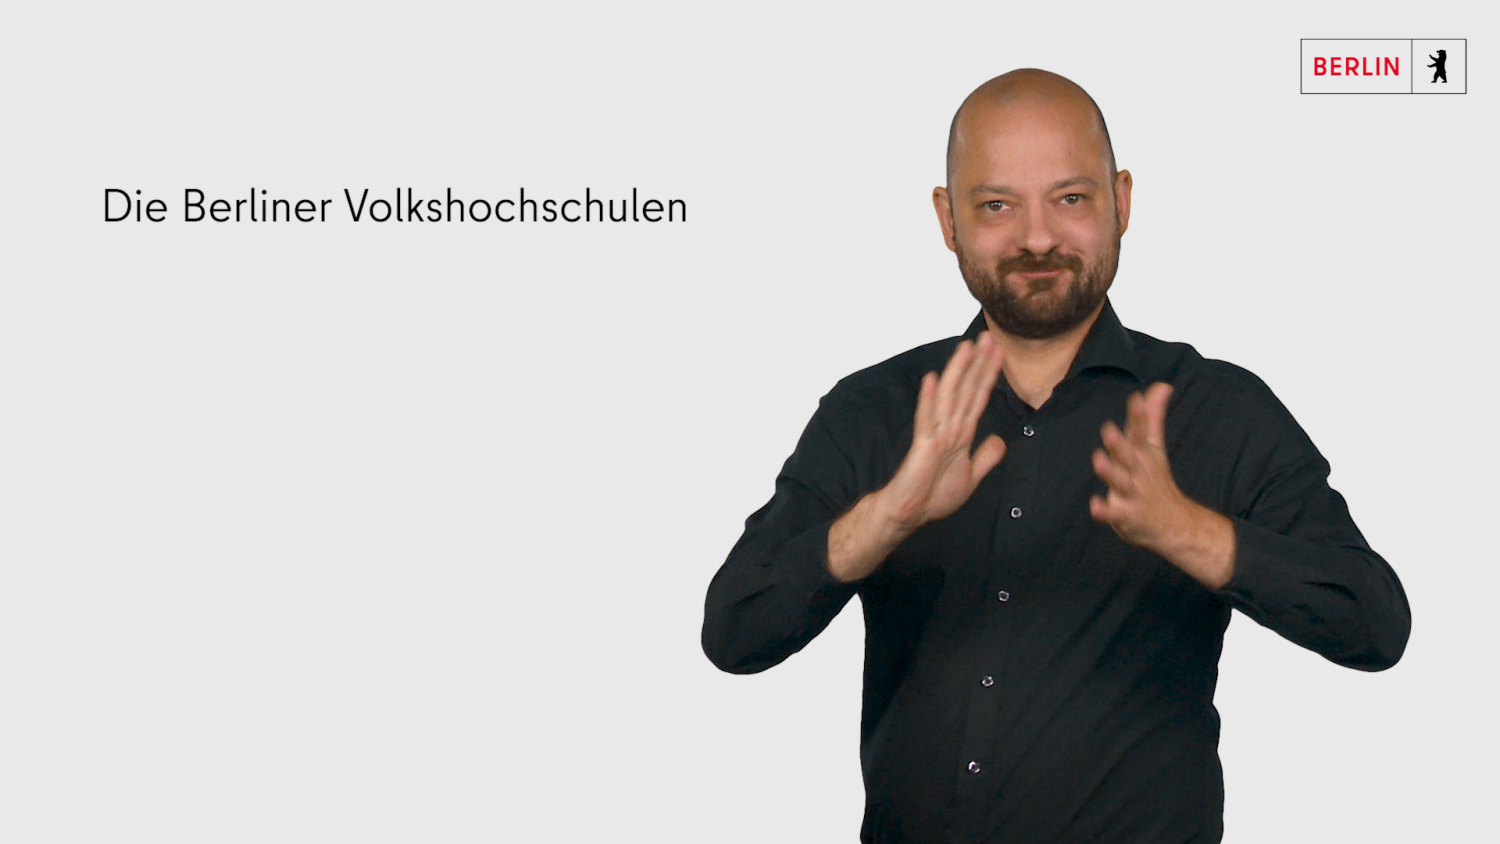 Foto des Gebärdensprachendolmetschers für das Video zu den 12 Berliner Volkshochschulen